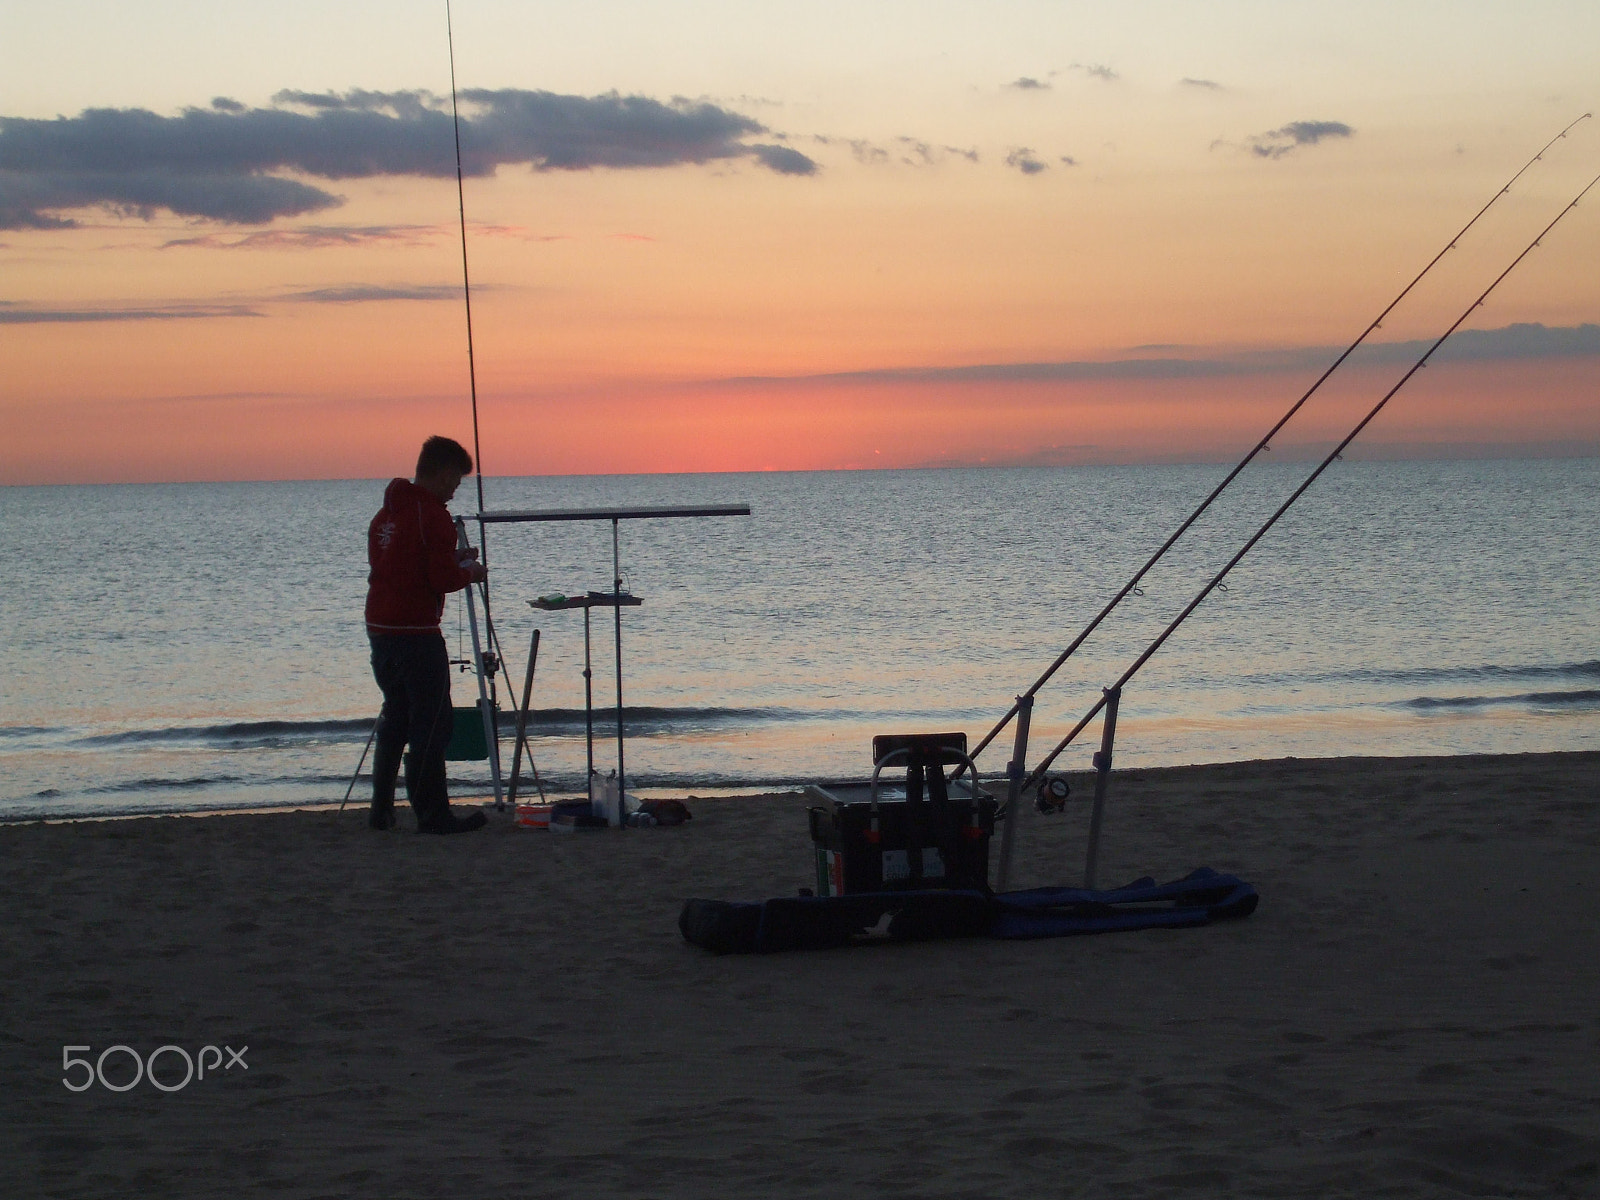 Fujifilm FinePix A820 sample photo. Il pescatore al tramonto photography